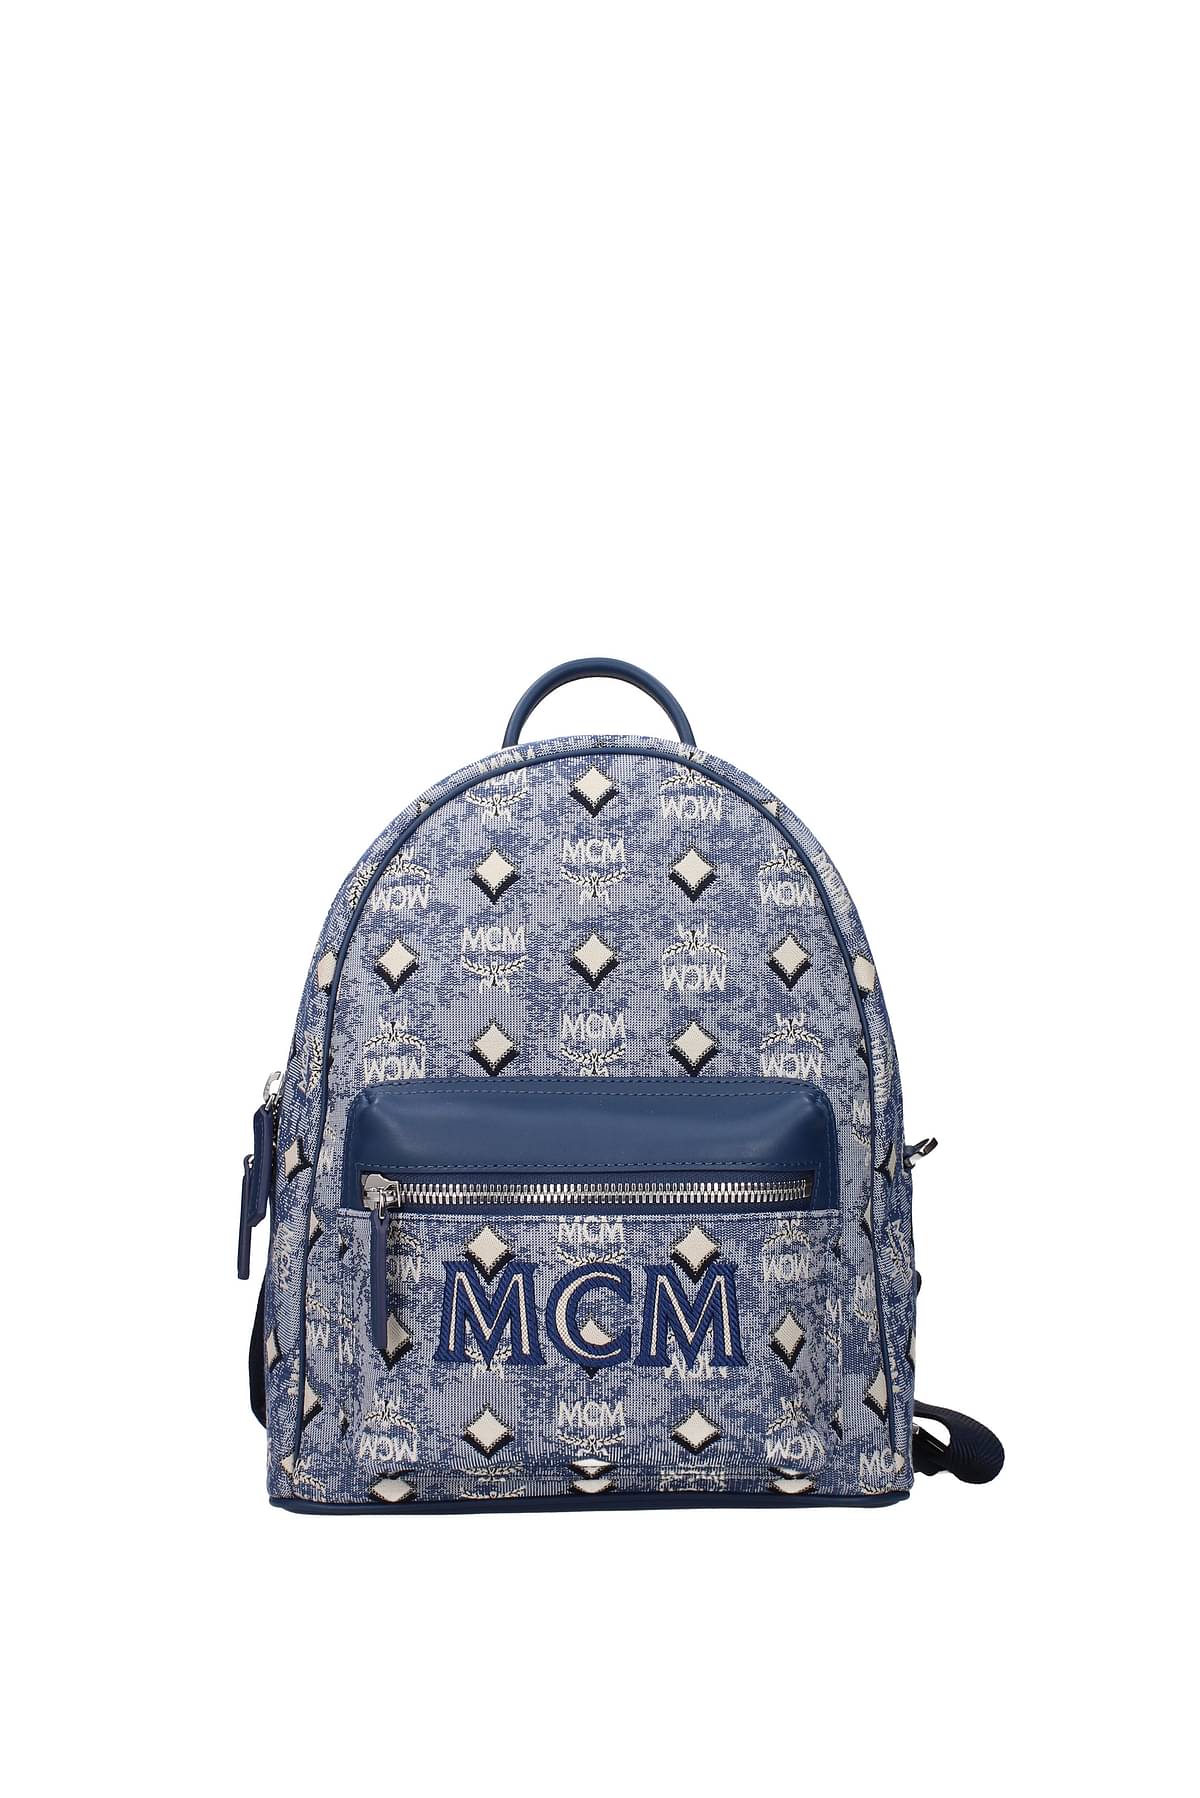 MCM Backpack and bumbags Men MMKBATQ01LU Fabric Blue Denim 511,88€